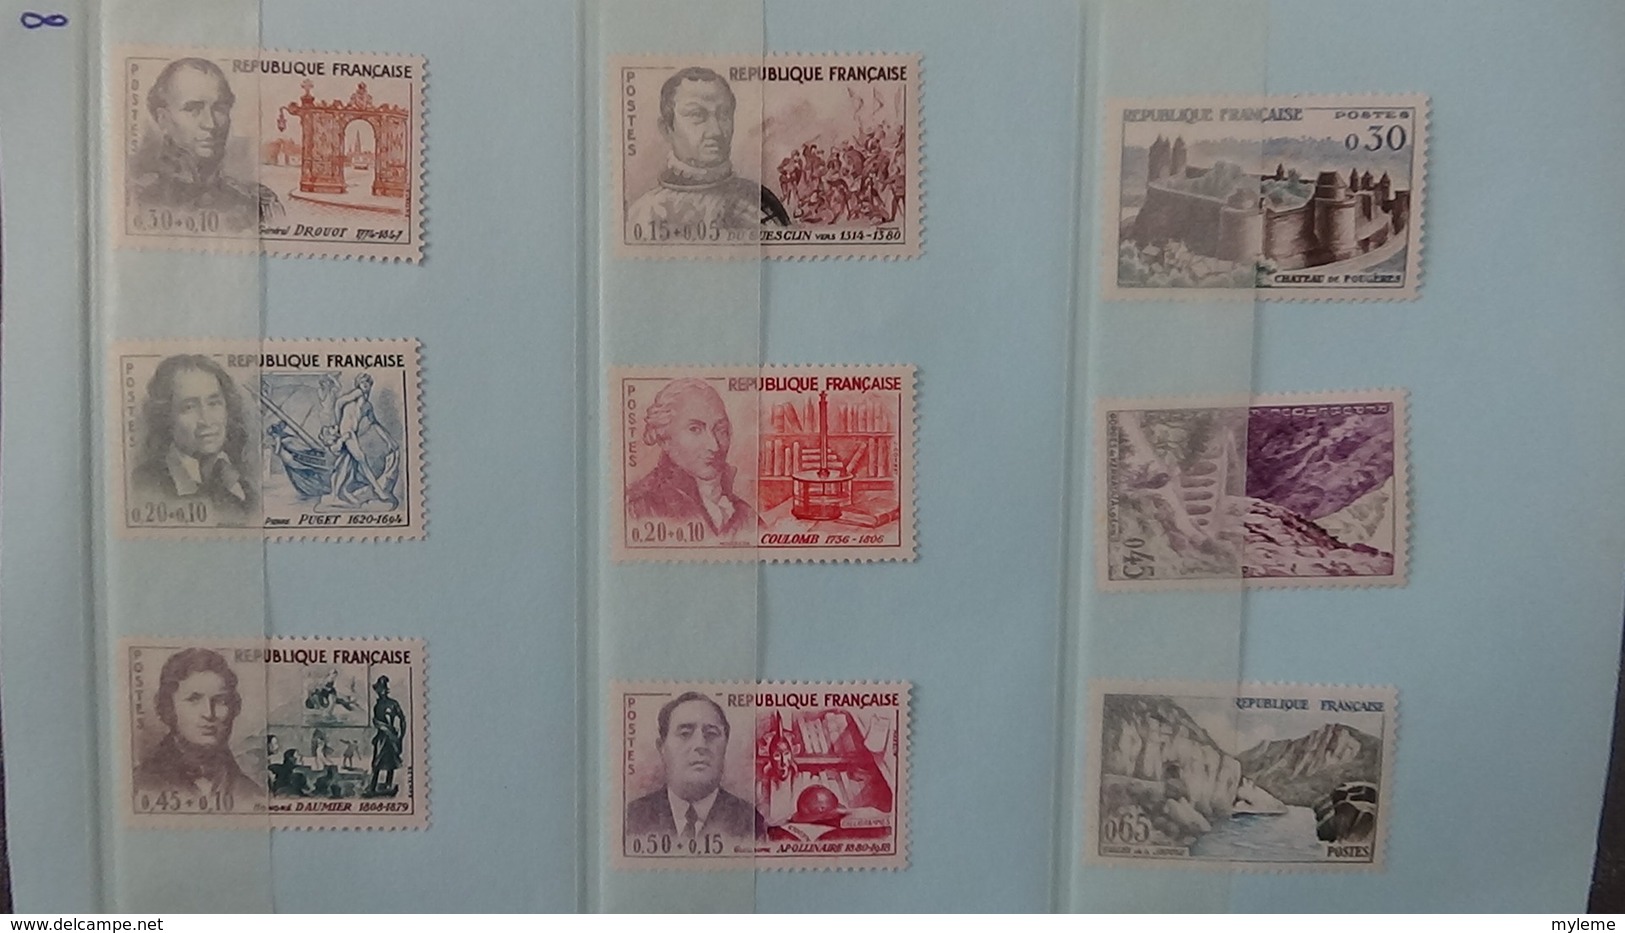 Carnet à choix dont séries grands hommes, timbres ànnées 40 à 60, carnets croix rouge  tout est **. Côte très sympa !!!